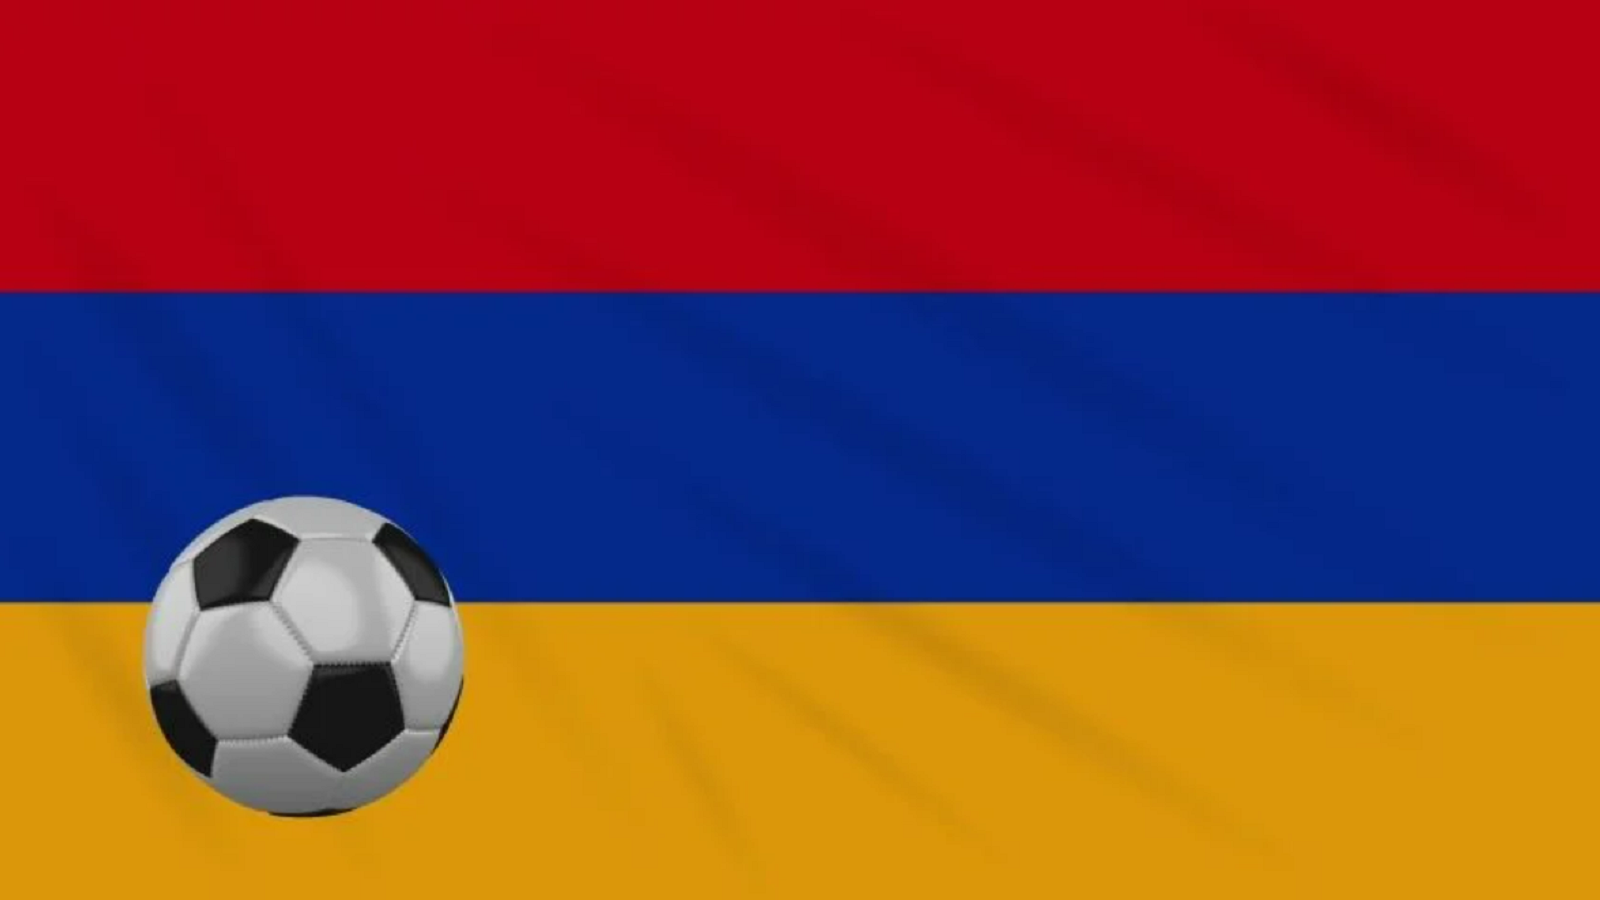 Сборная Армении по футболу всех времен. «Команда-мечта»